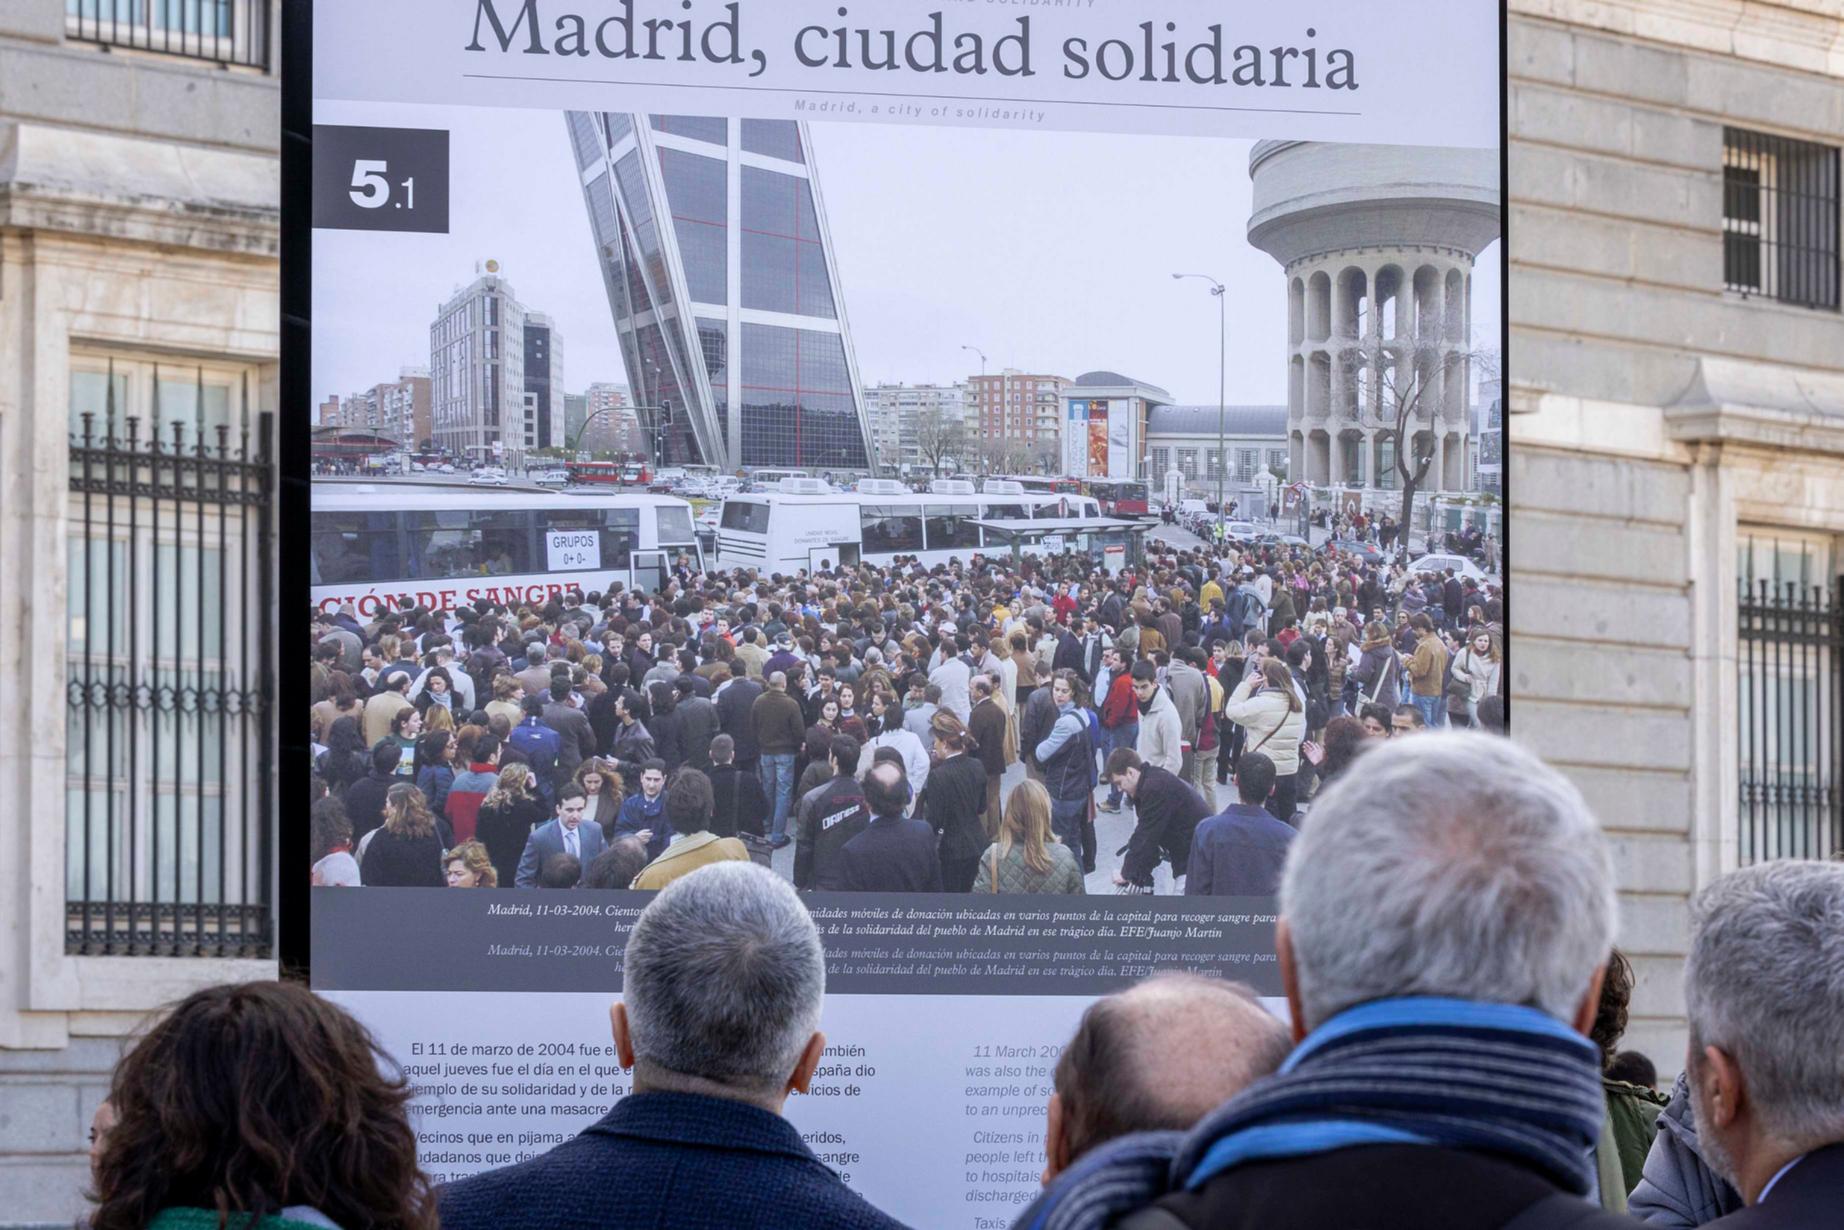 Grande-Marlaska: “El 11M, la sociedad española volvió a demostrar que no hay terrorismo capaz de doblegarla”